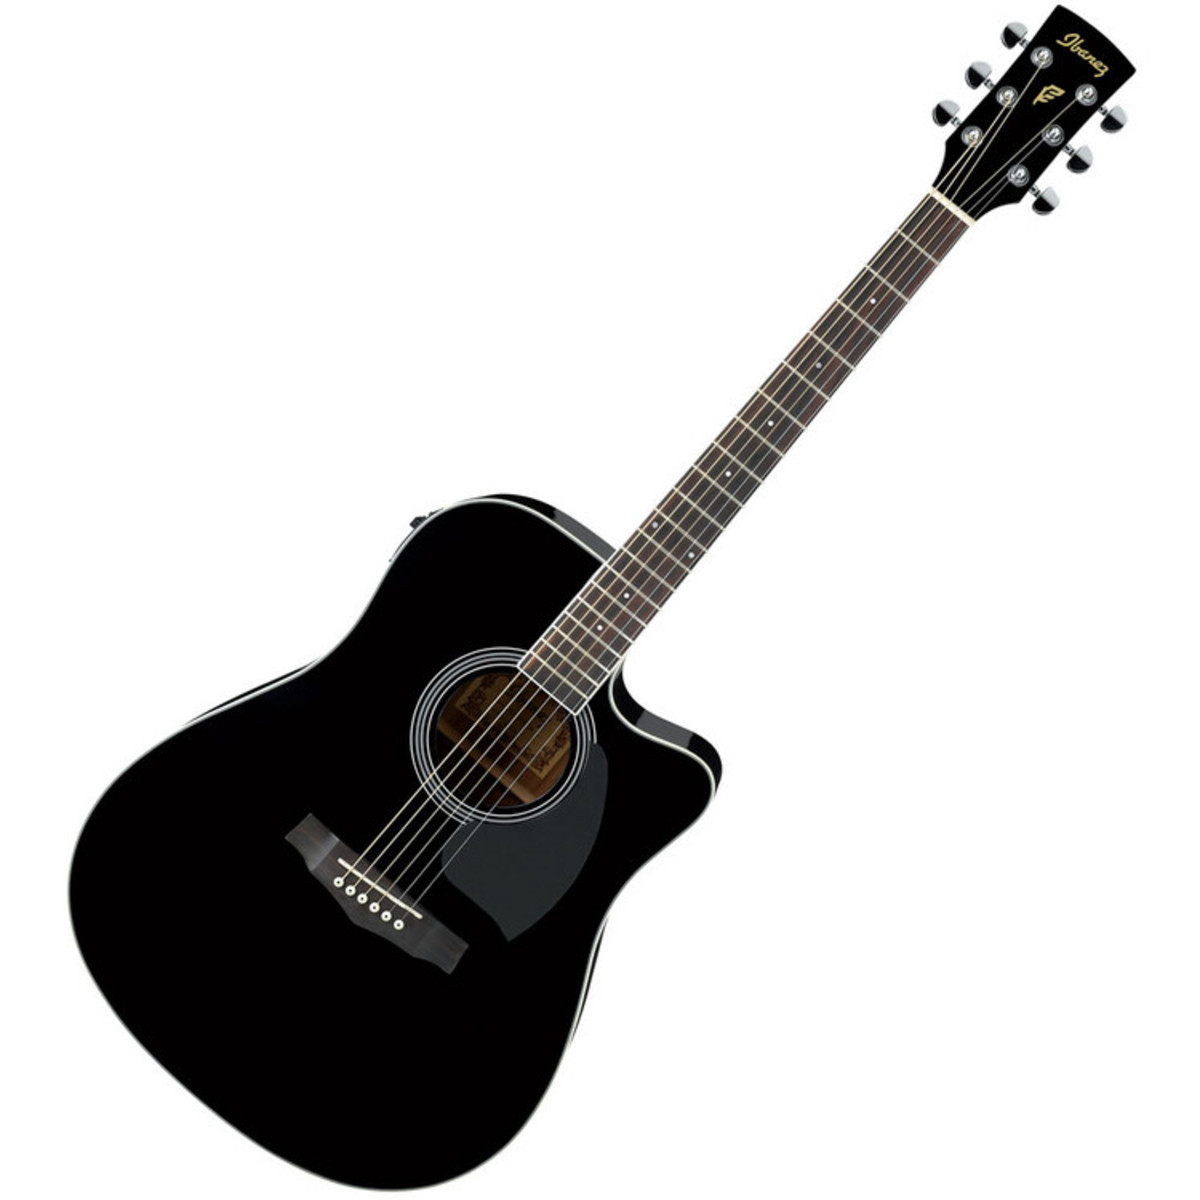 IBANEZ PF15ECE-BK электроакустическая гитара, цвет черный, матовый, топ ель, махогани обечайка 